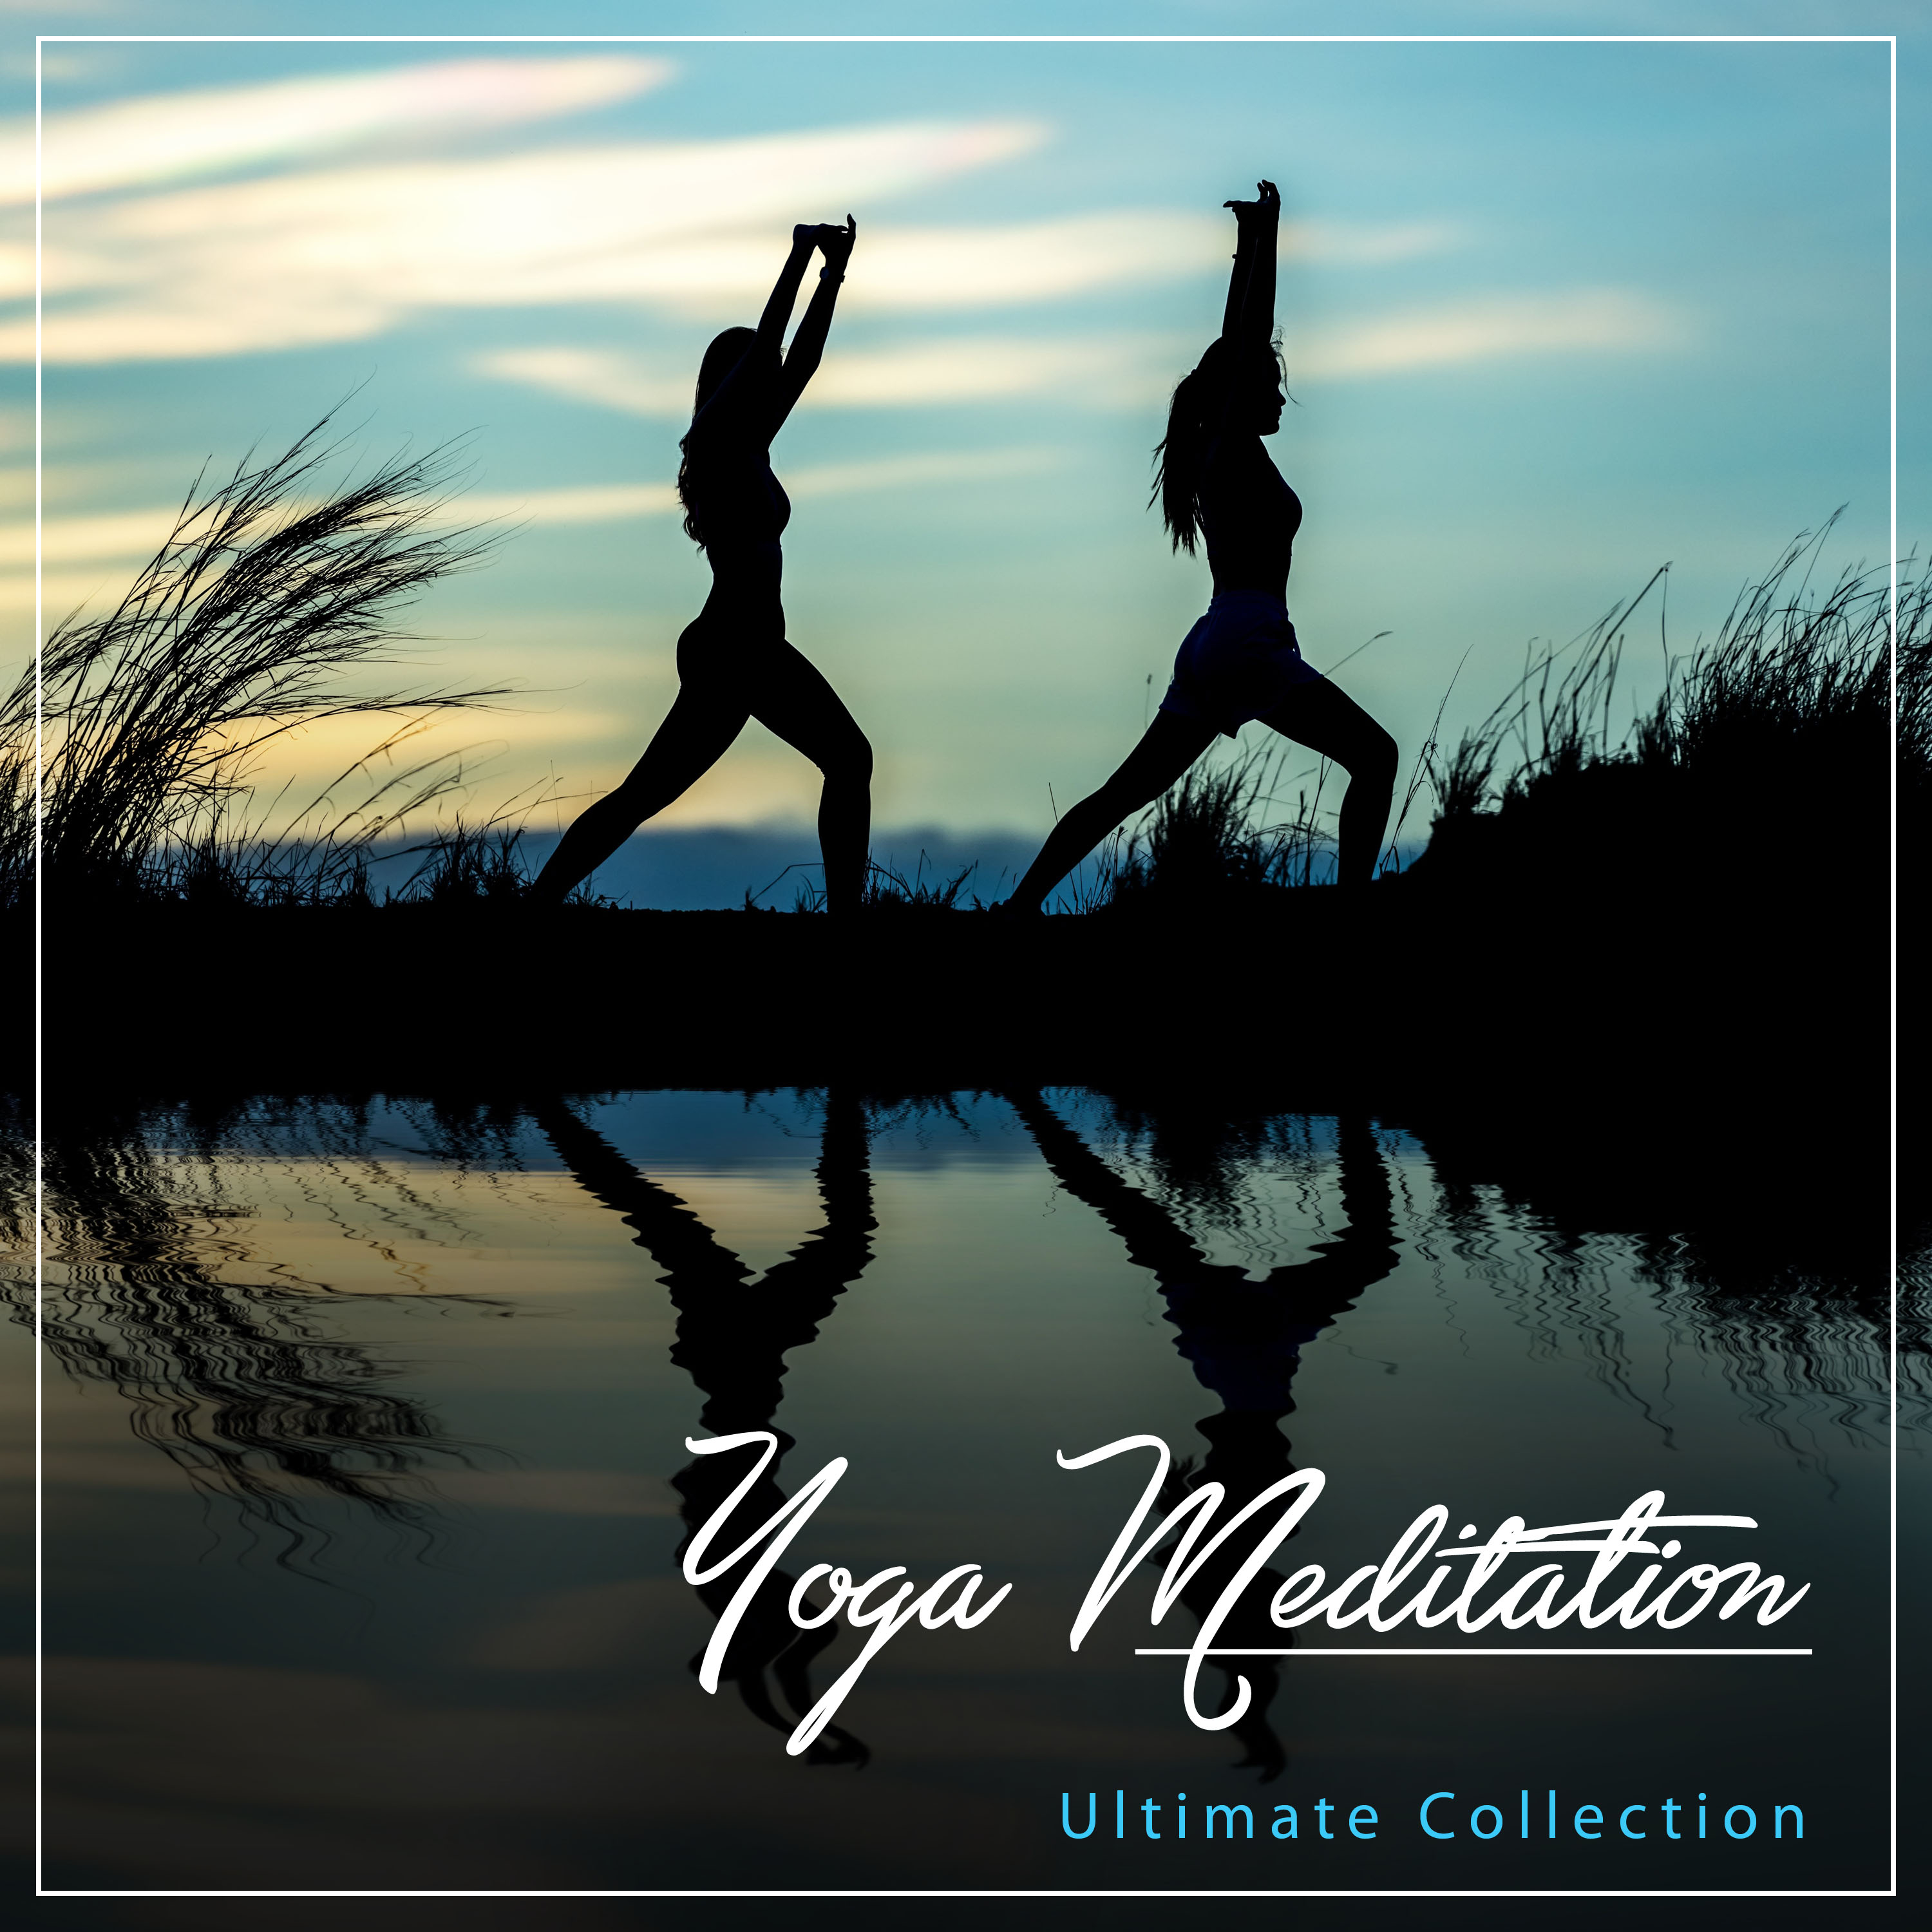 18 Yoga Meditation Tracks - Ultimate Collection